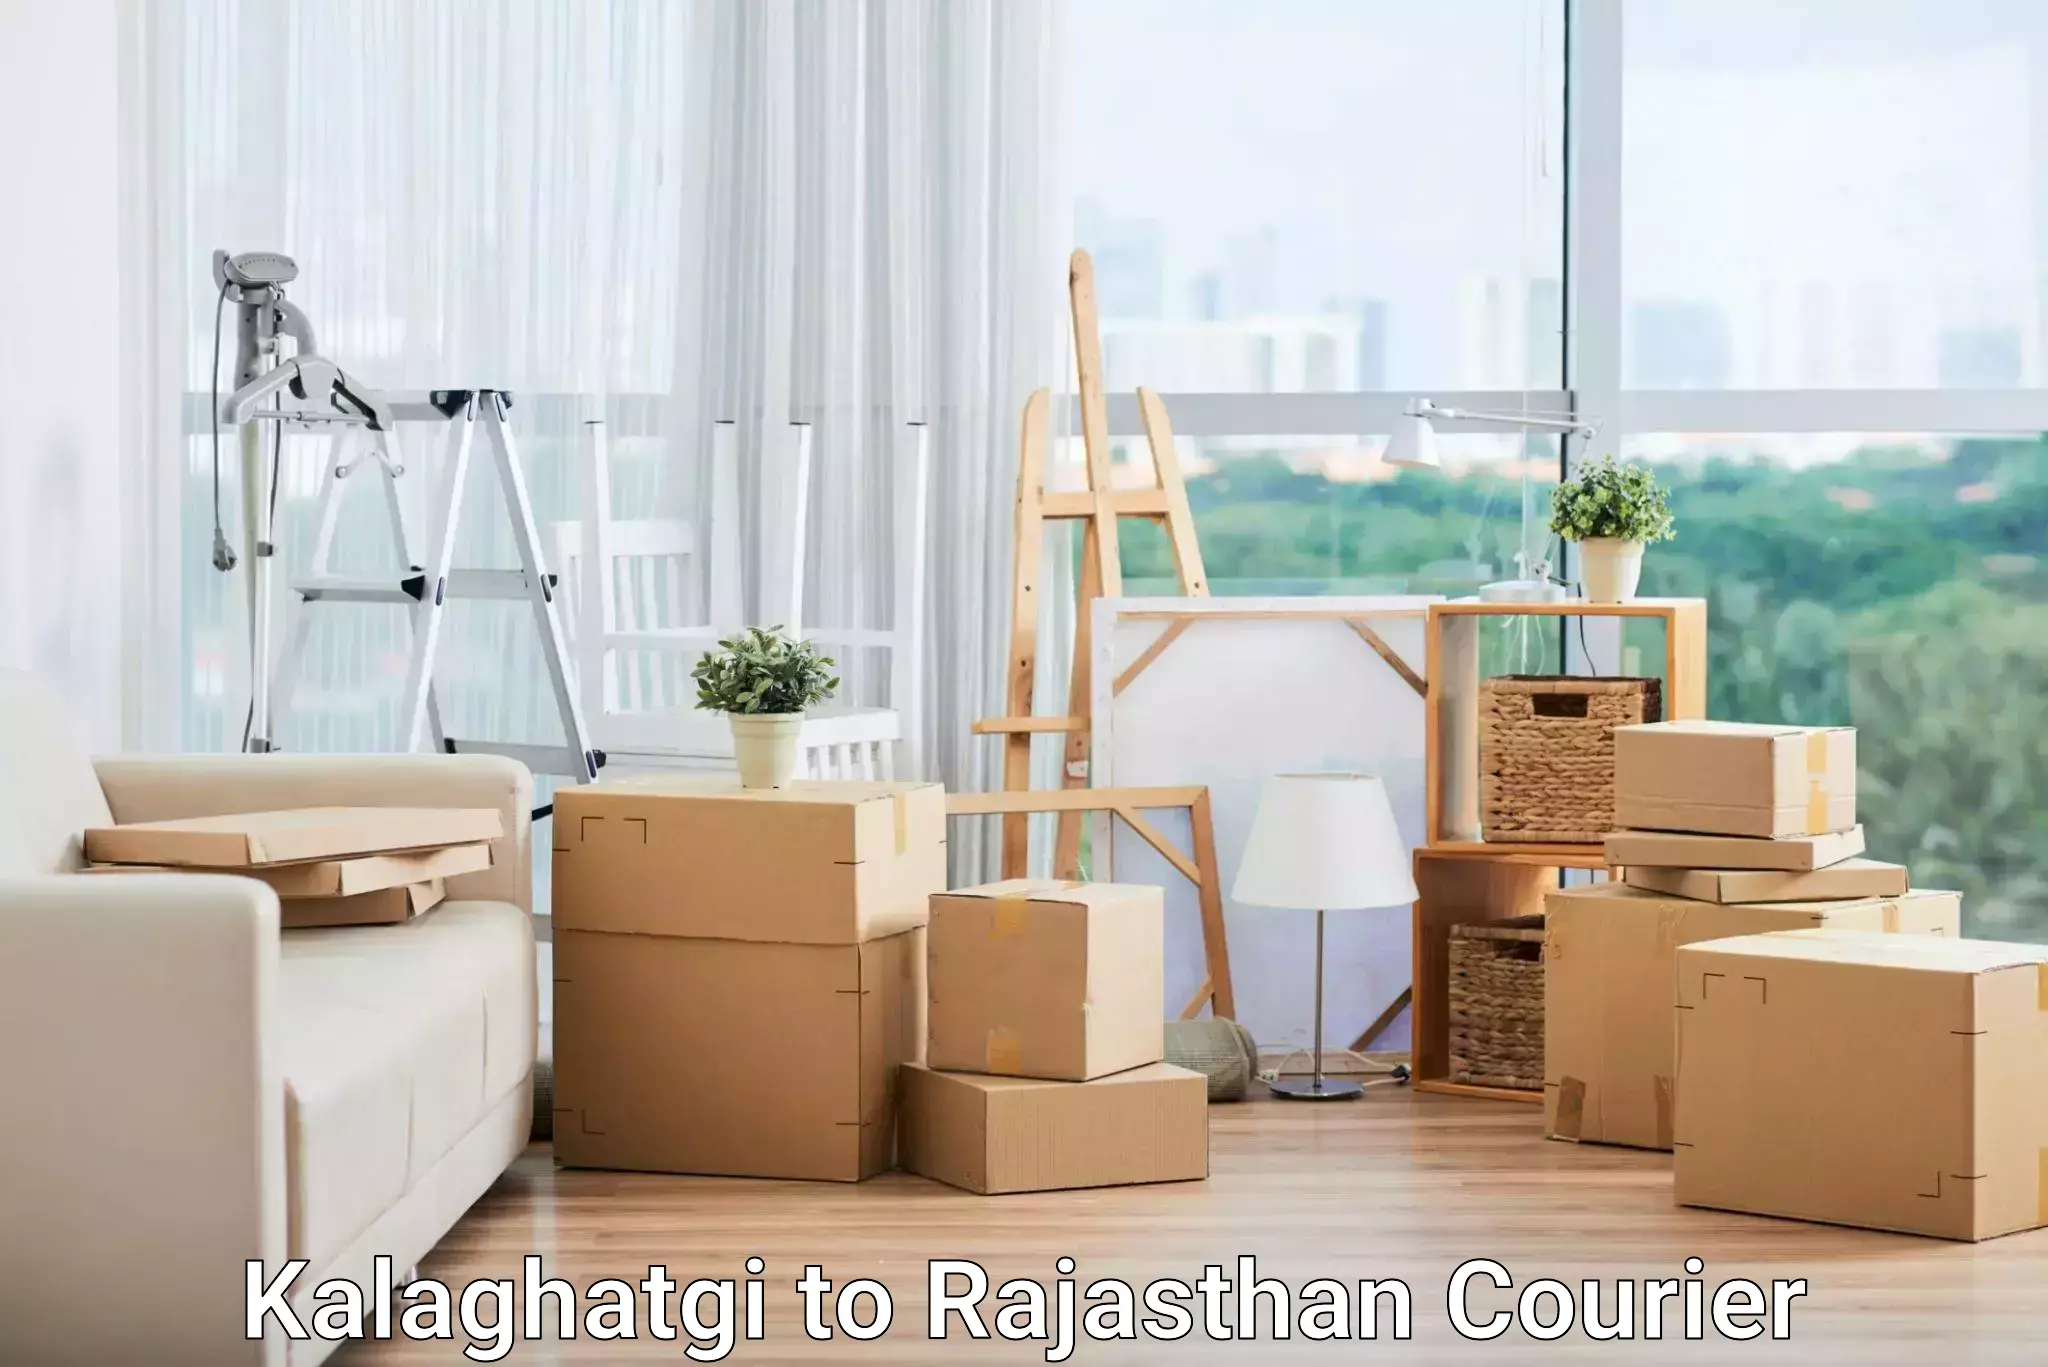 High-capacity parcel service Kalaghatgi to Viratnagar